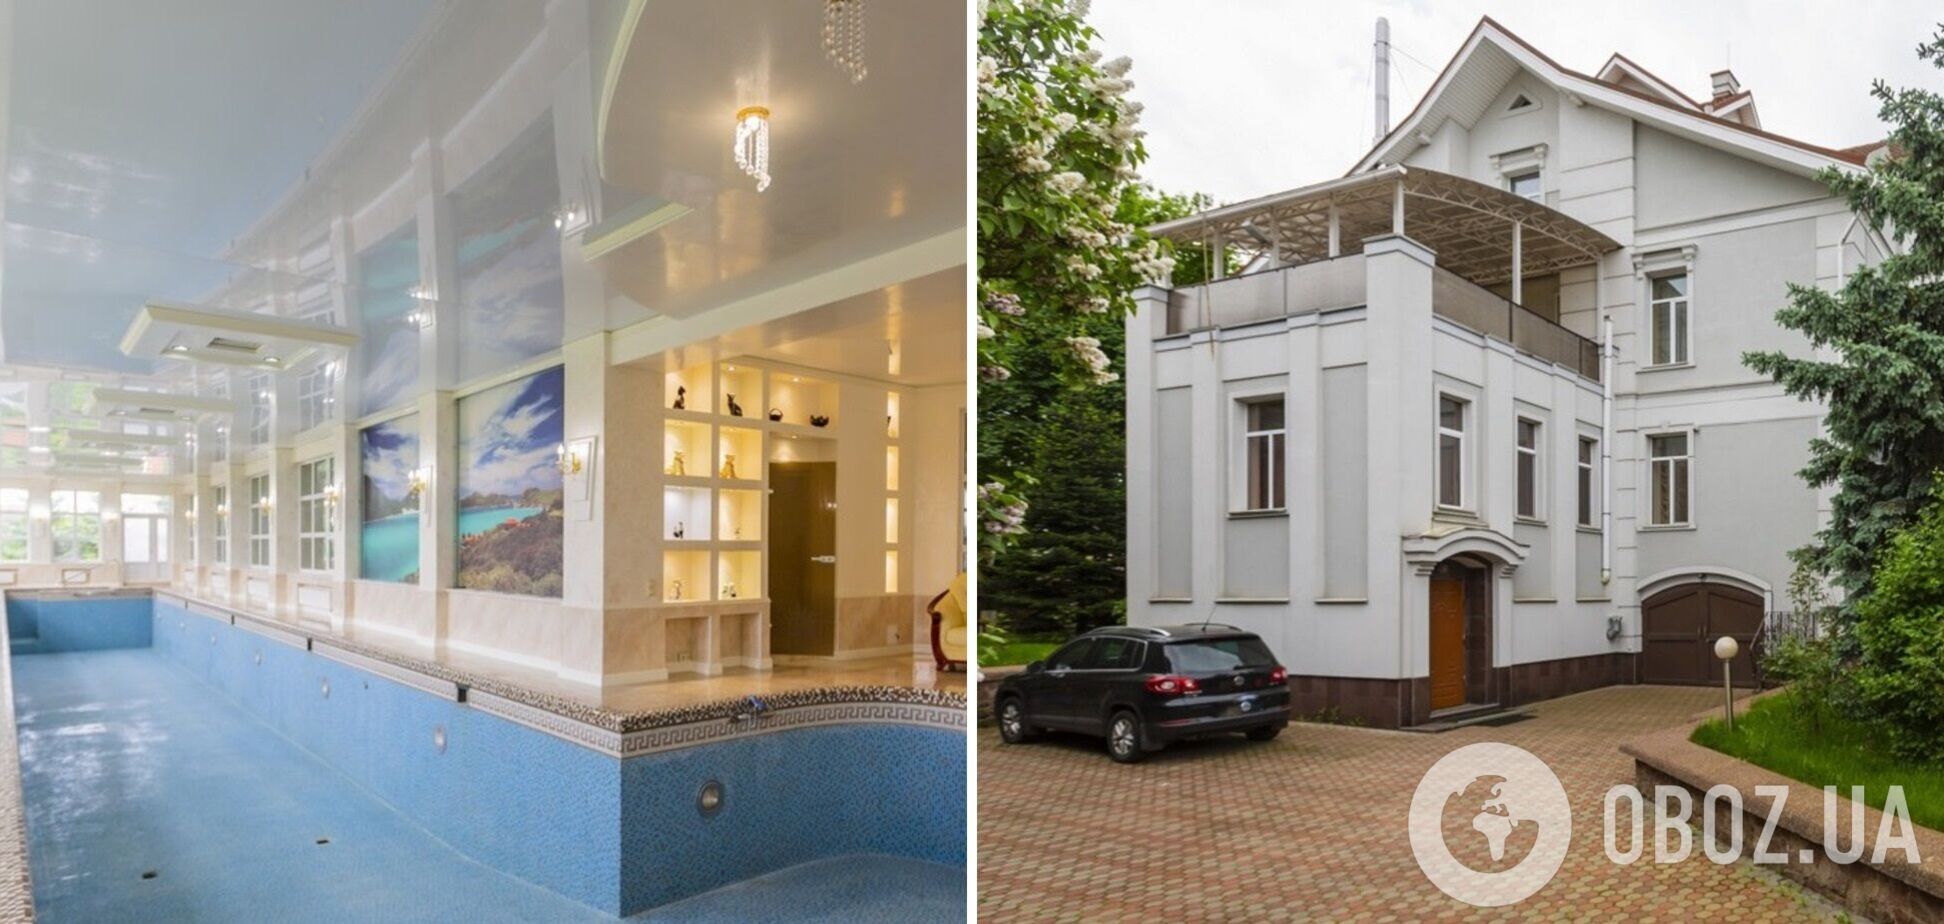 Под Киевом продают дом за 30 млн грн с 'пристройкой' для обслуги